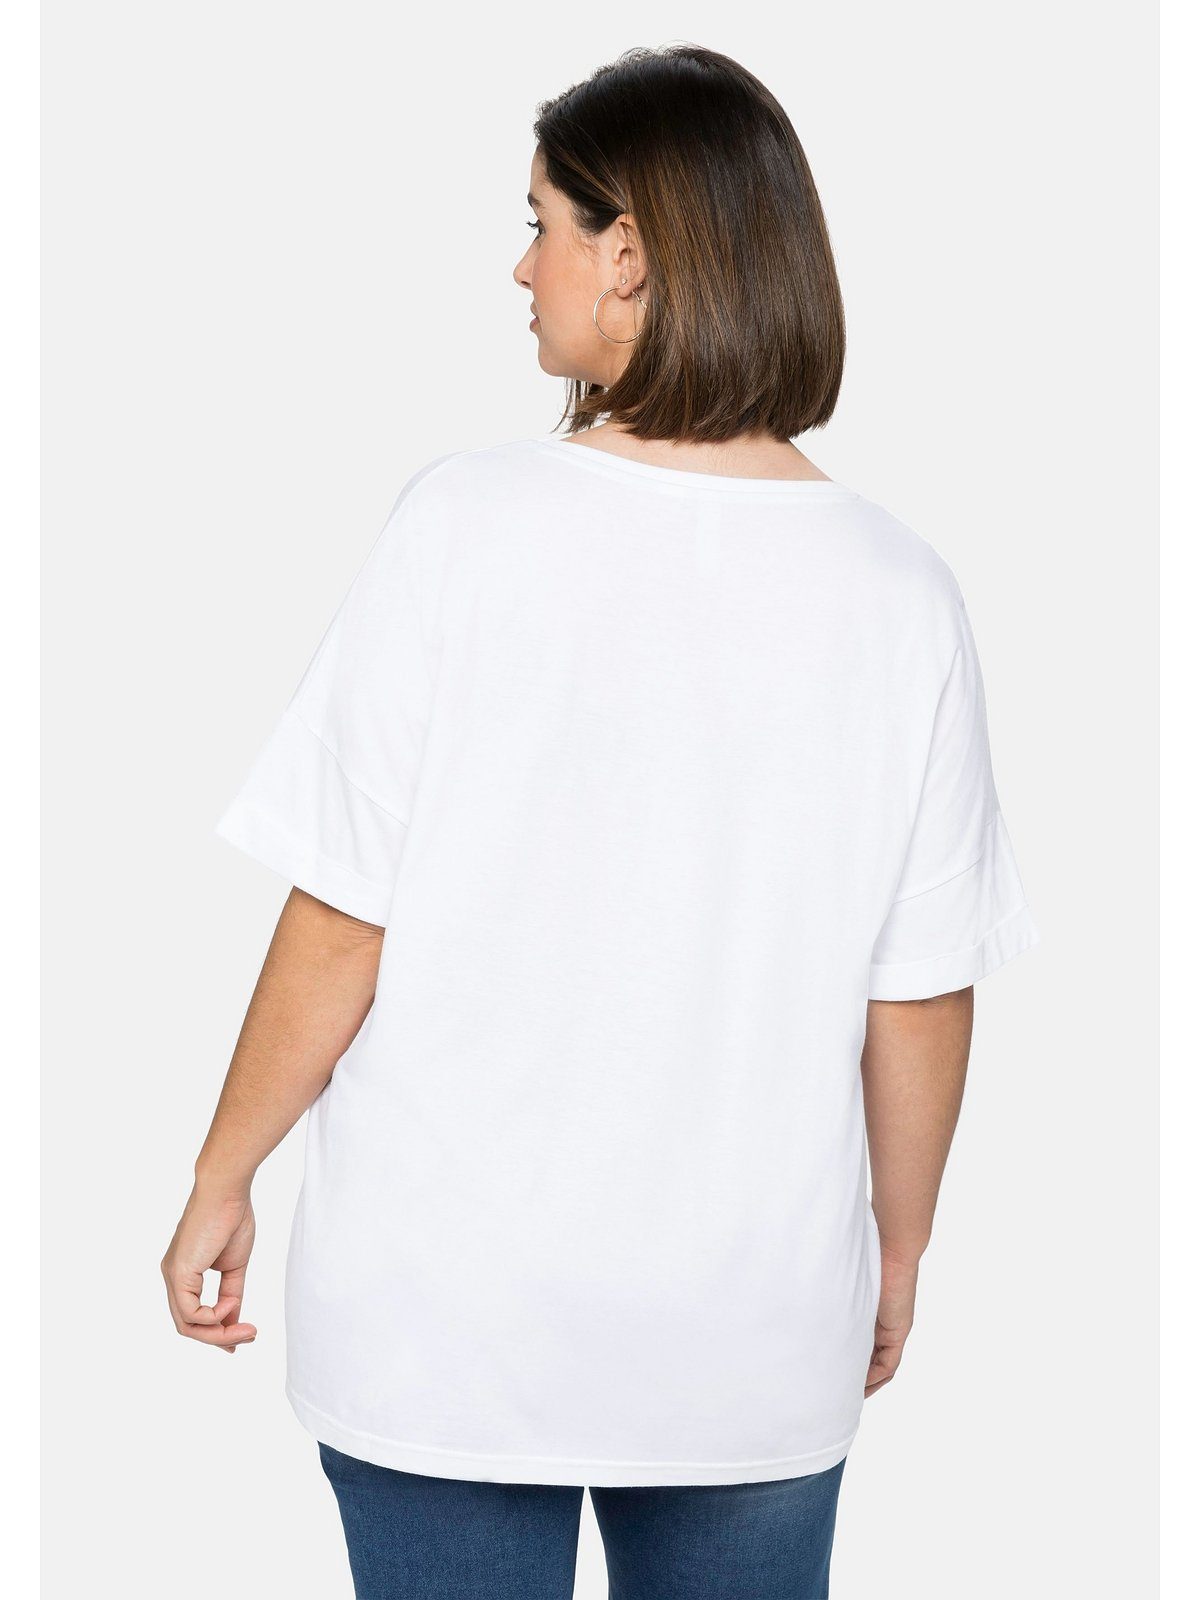 Ärmelaufschlag weiß Größen Sheego Frontdruck und mit Große T-Shirt